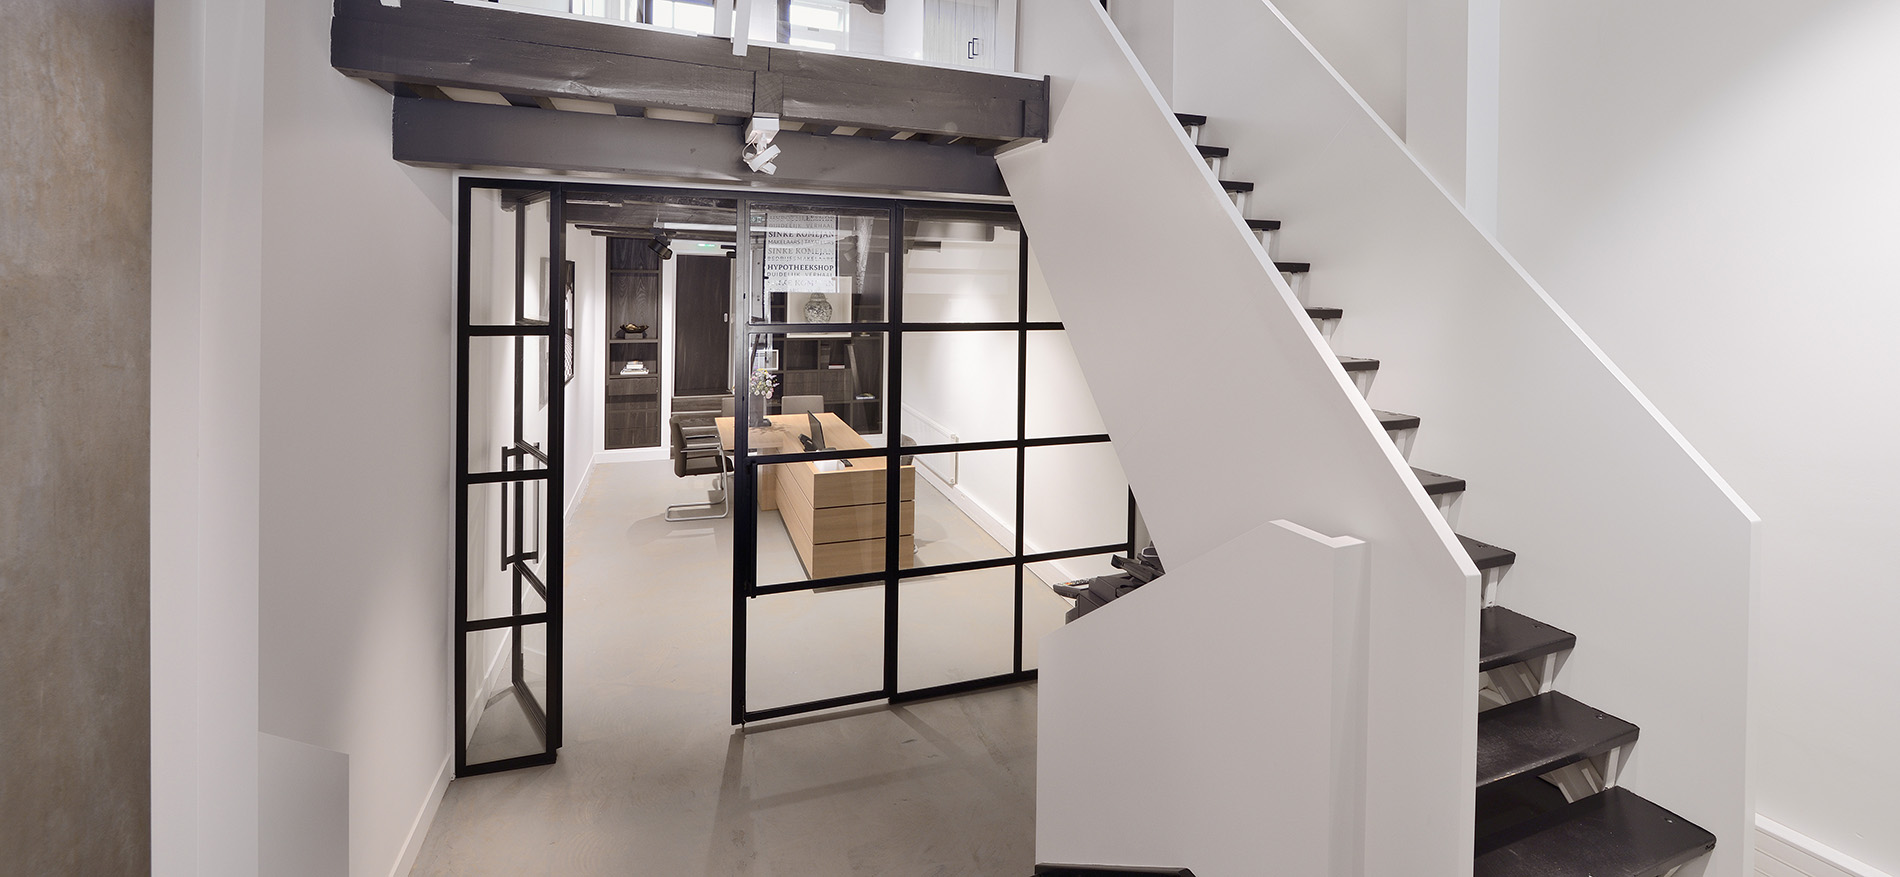 Sinke Makelaars – concept d’intérieur pour aménagement de bureau - 